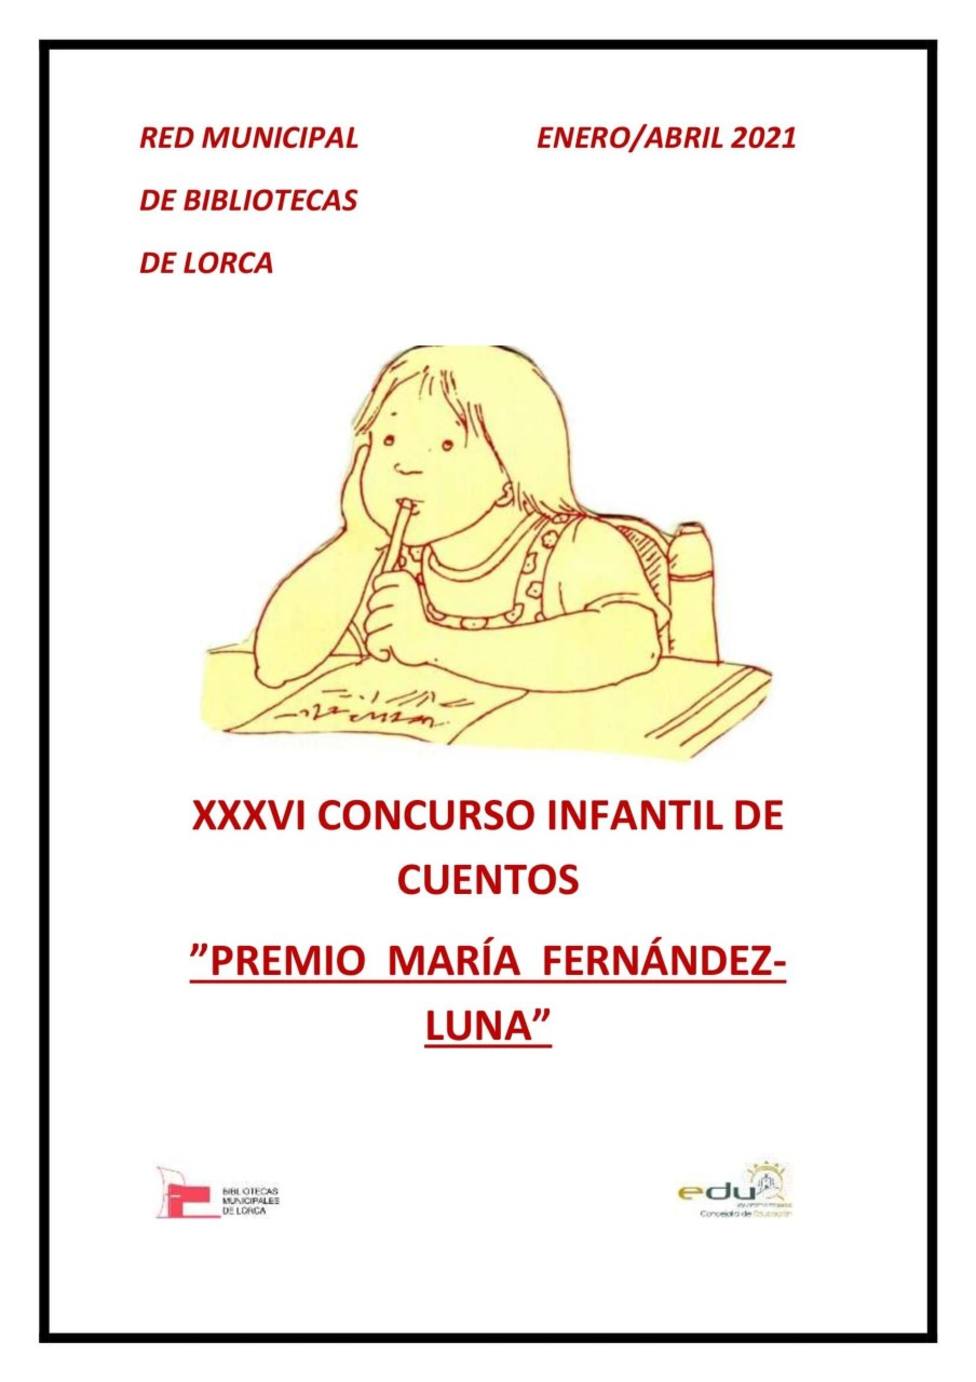 Abierto el plazo para participar en el XXXVI Concurso Infantil de Cuentos ‘Premio María Fernández-Luna’